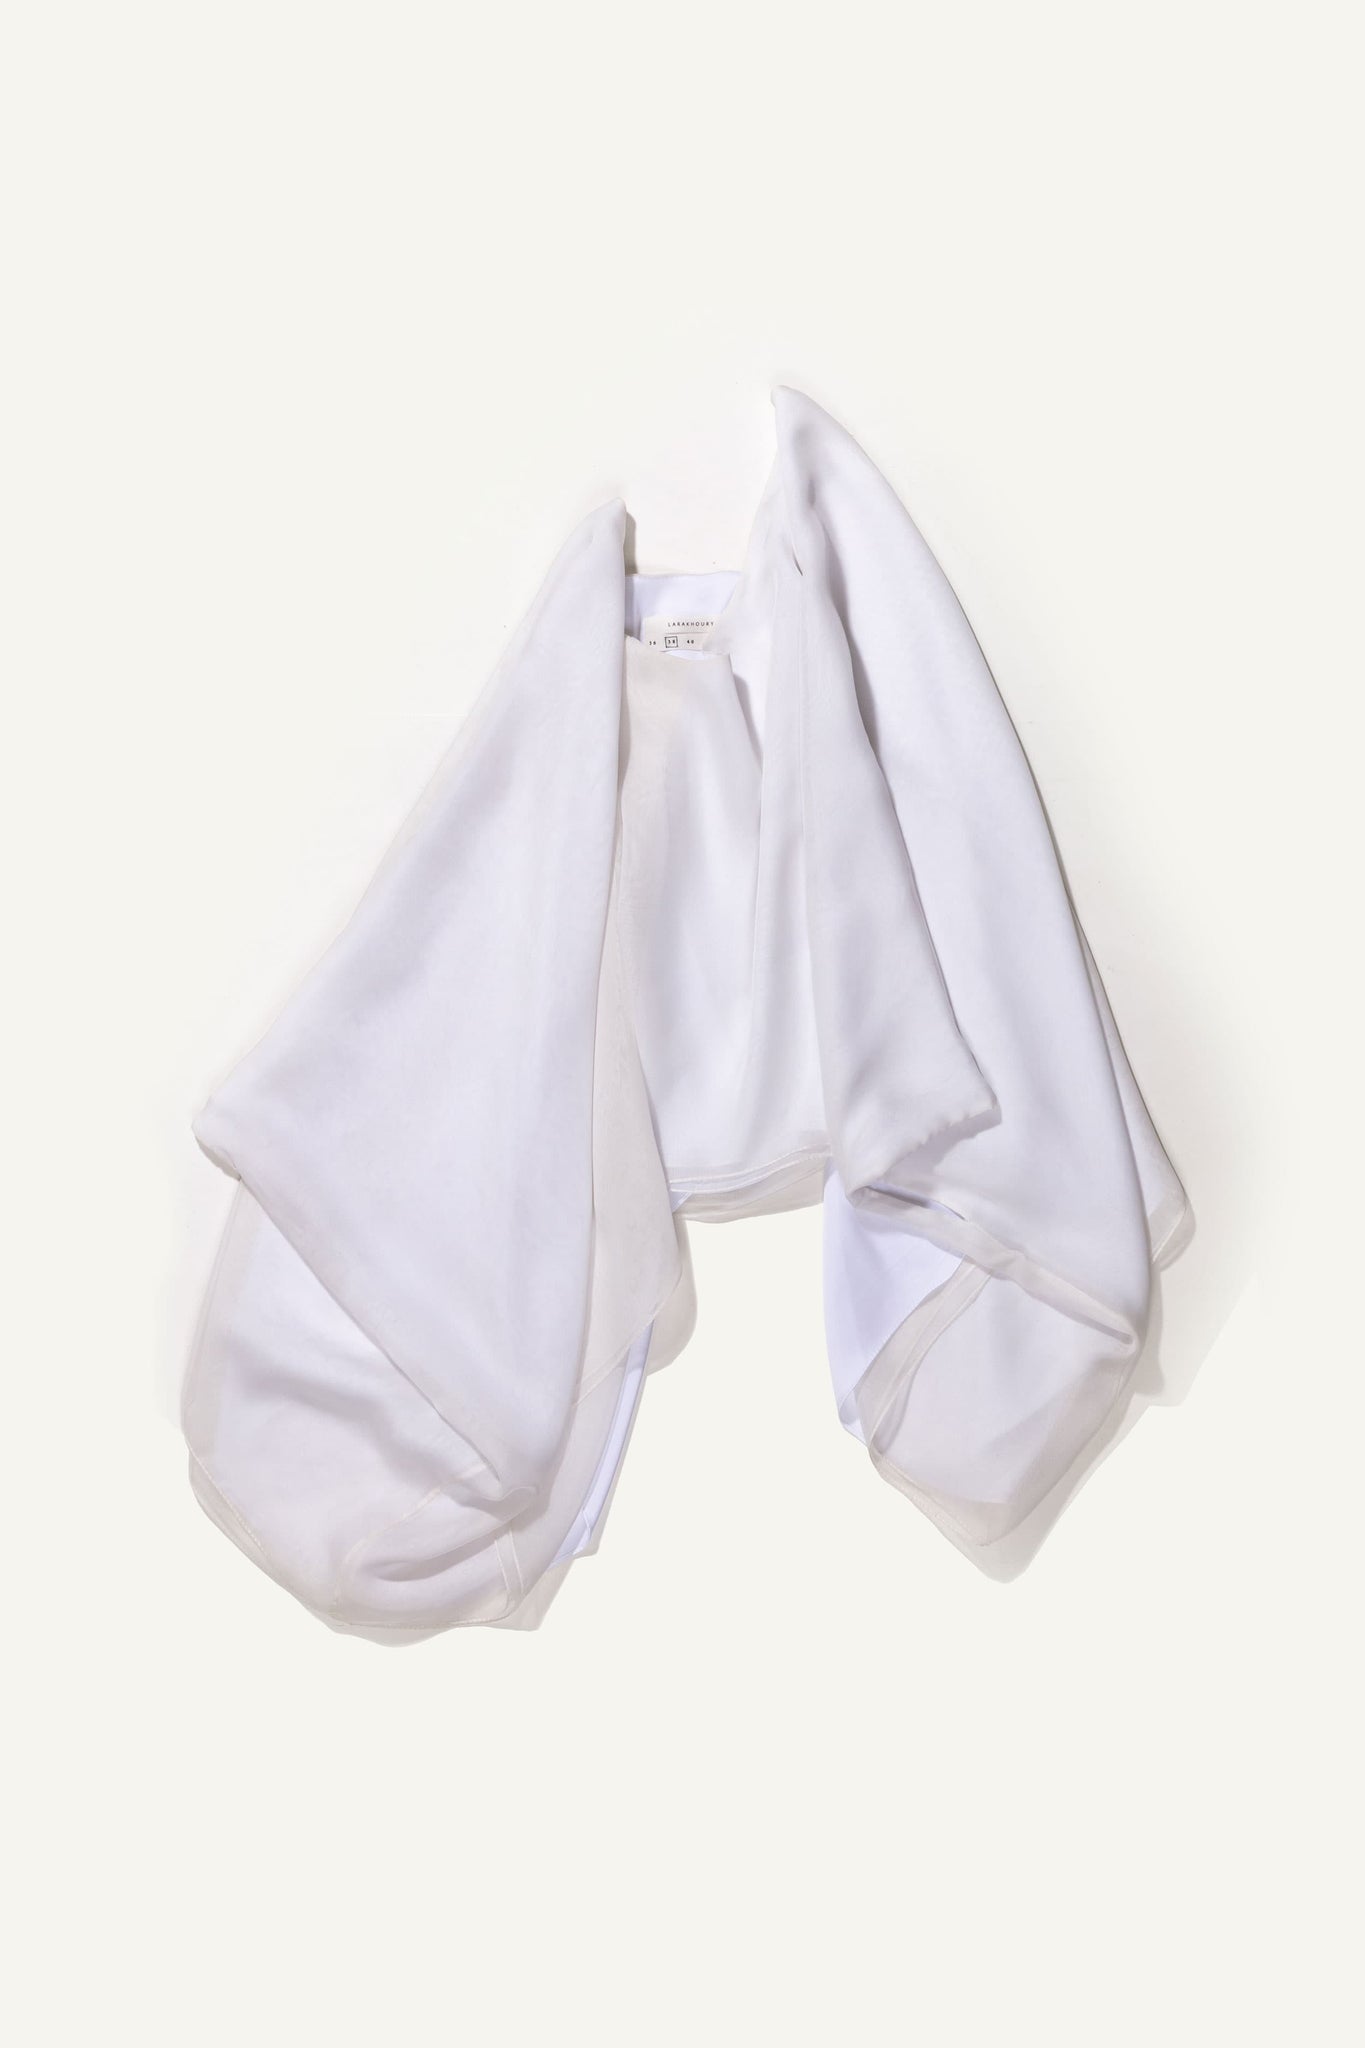 LARAKHOURY Long Sleeve White Drape Top